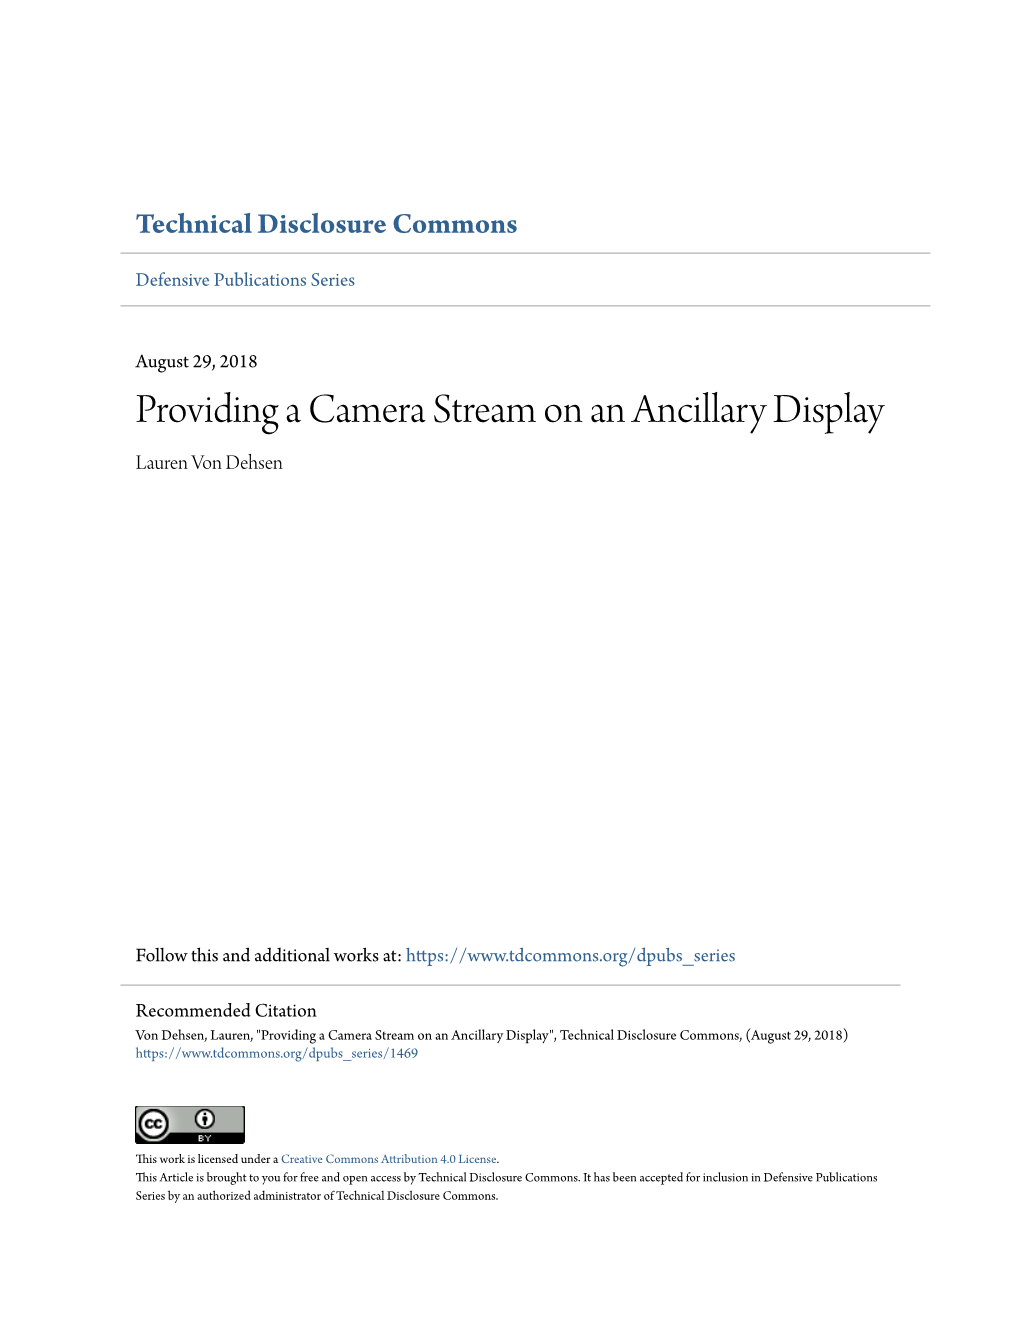 Providing a Camera Stream on an Ancillary Display Lauren Von Dehsen